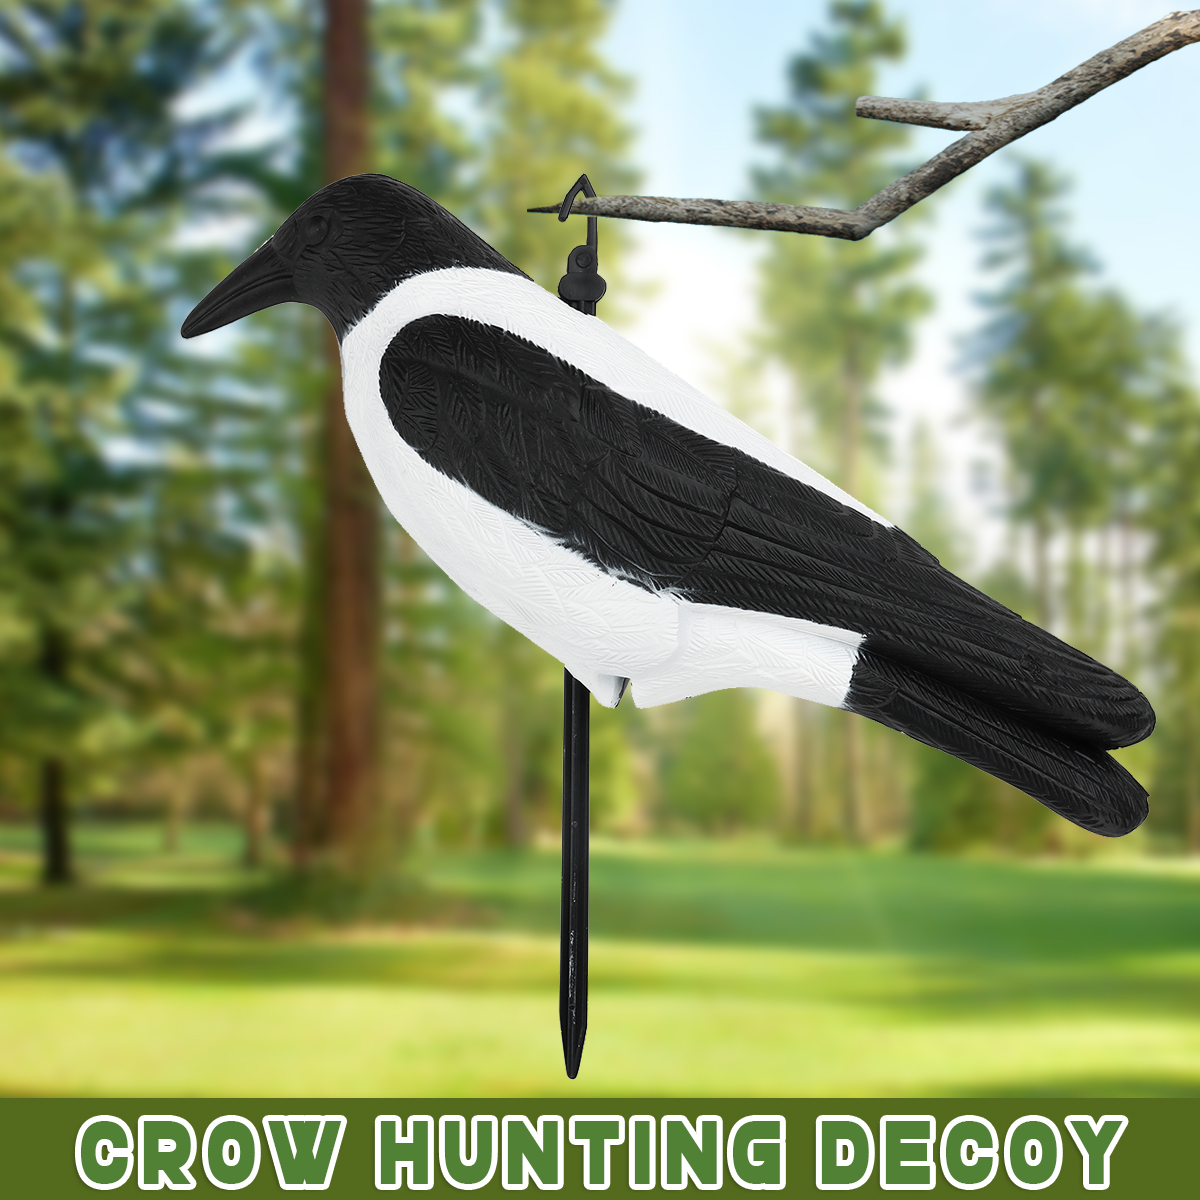 Crow-Hunting-Decoy-Bird-Deterrent-Scarer-Outdoor-Garden-Hunting-Equipment-1556629-4